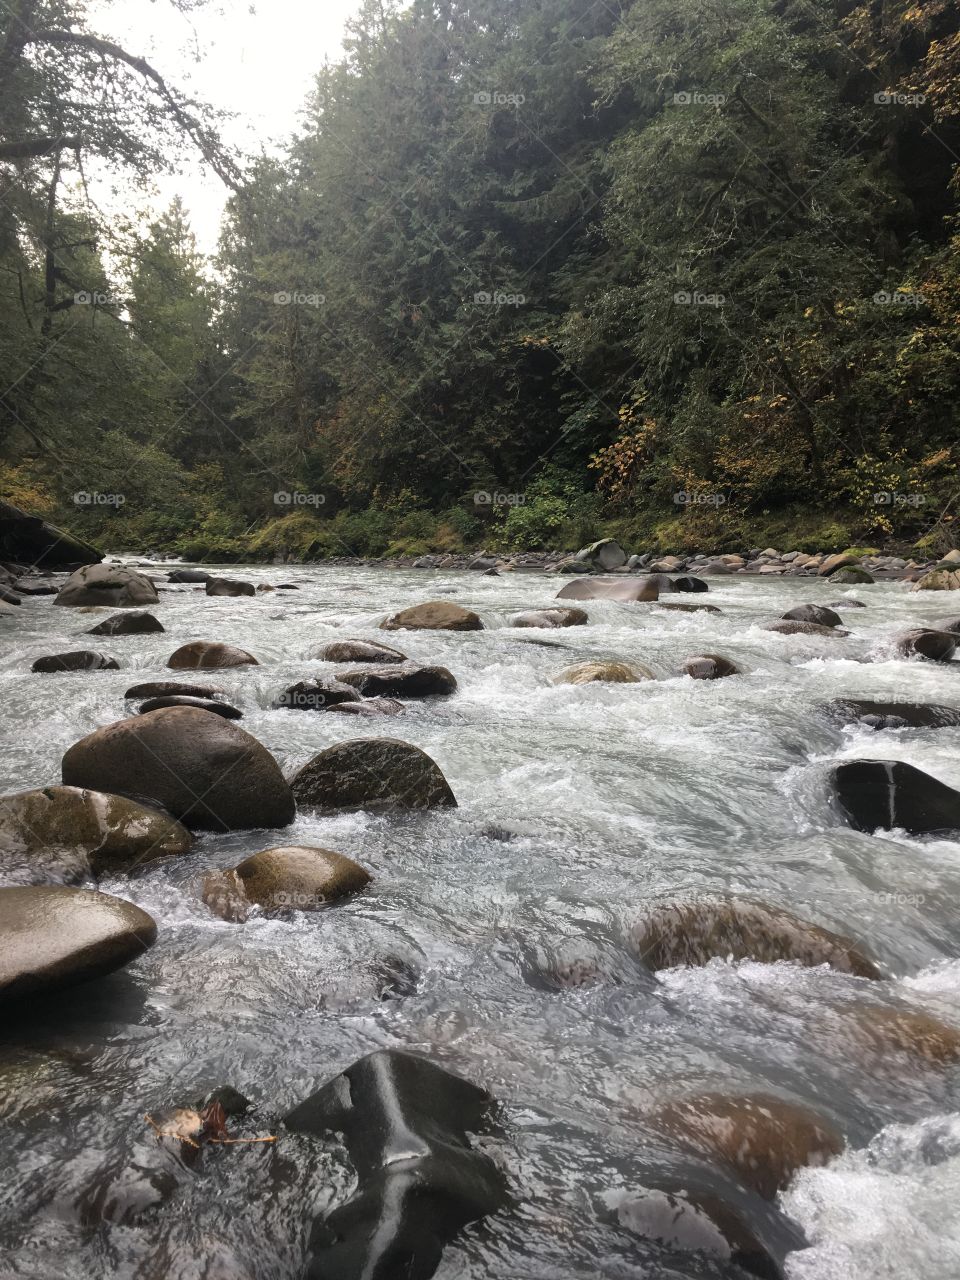 Carbon River down Mount Rainier 